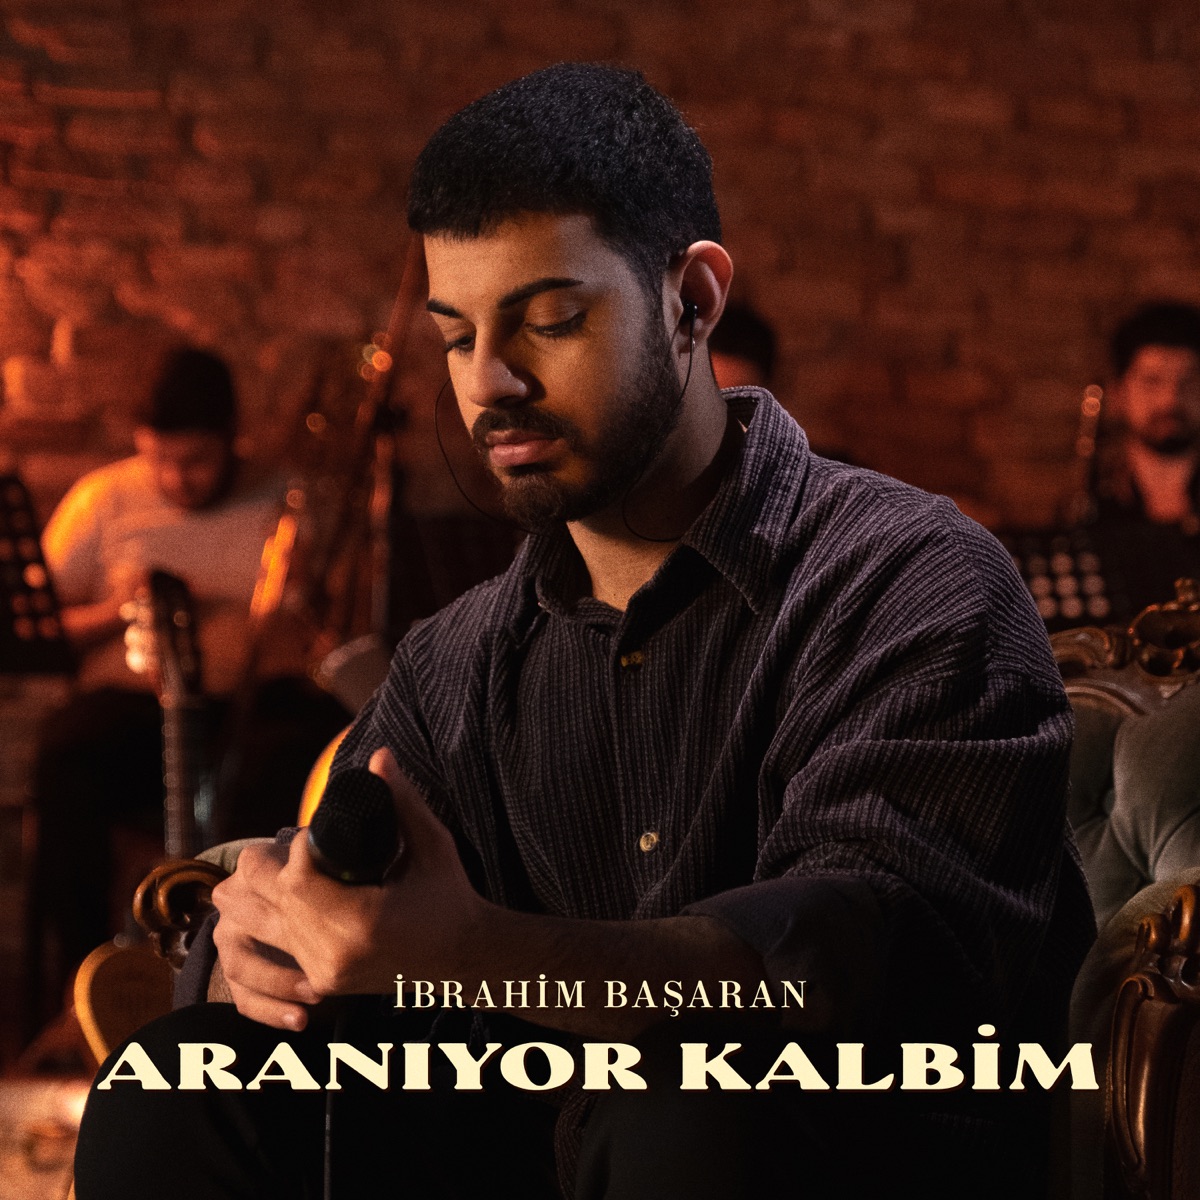 Sonbaharın Hatrına - Single by İbrahim Başaran on Apple Music